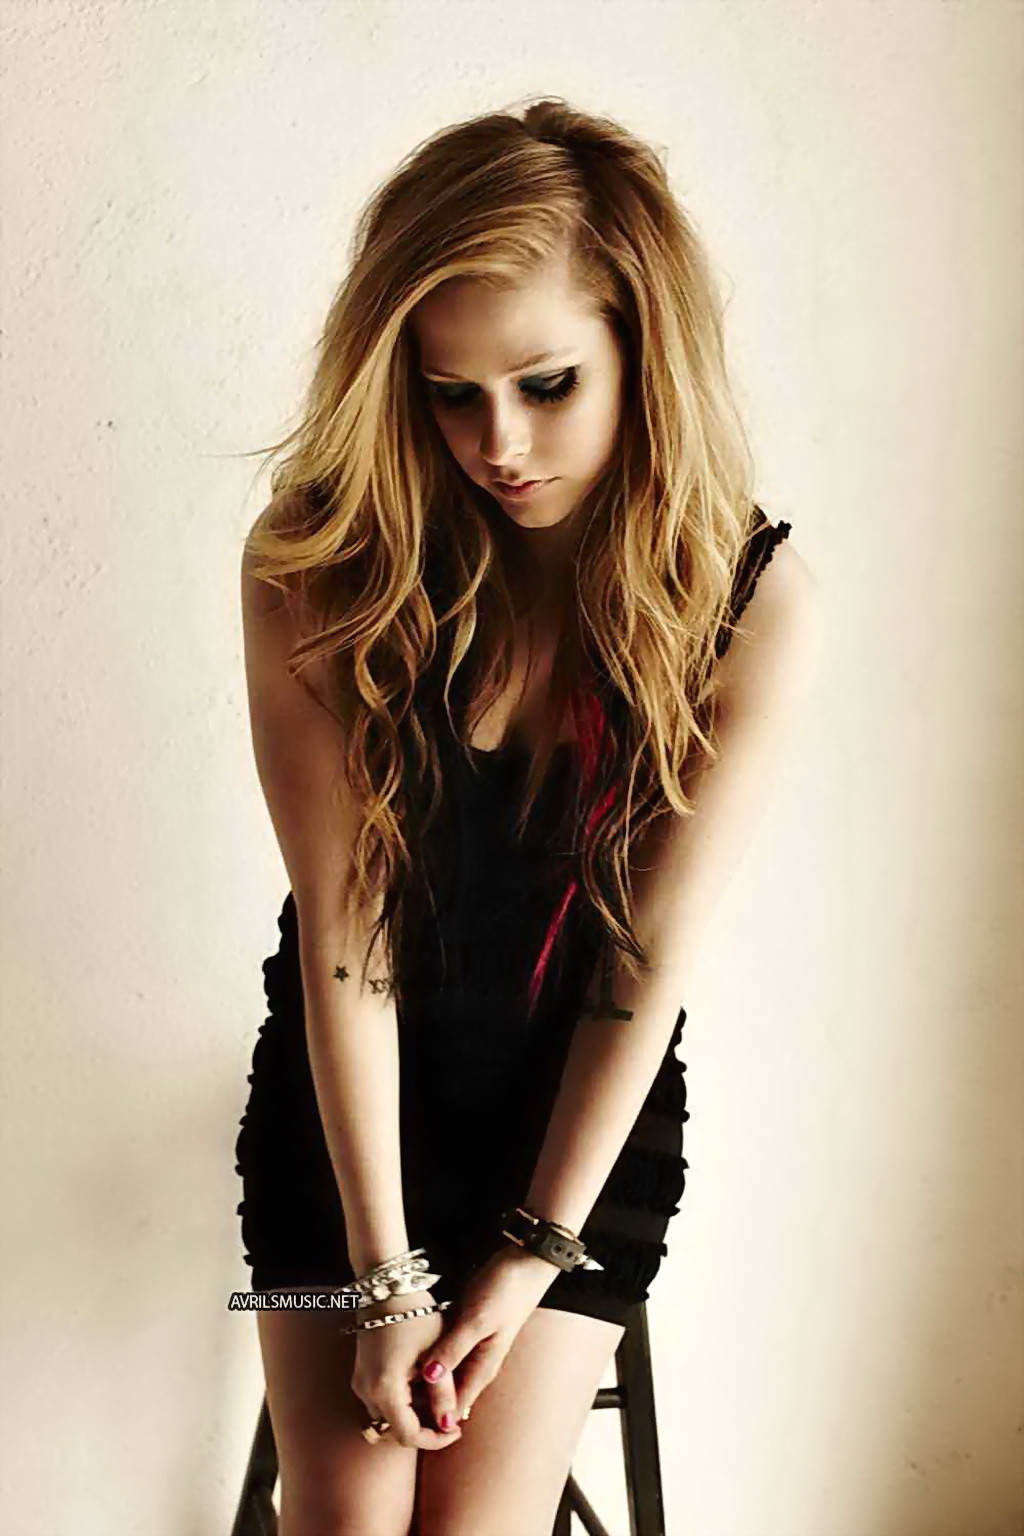 Avril Lavigne guardando molto sexy in mini abito per inked magazine photoshoot
 #75344284